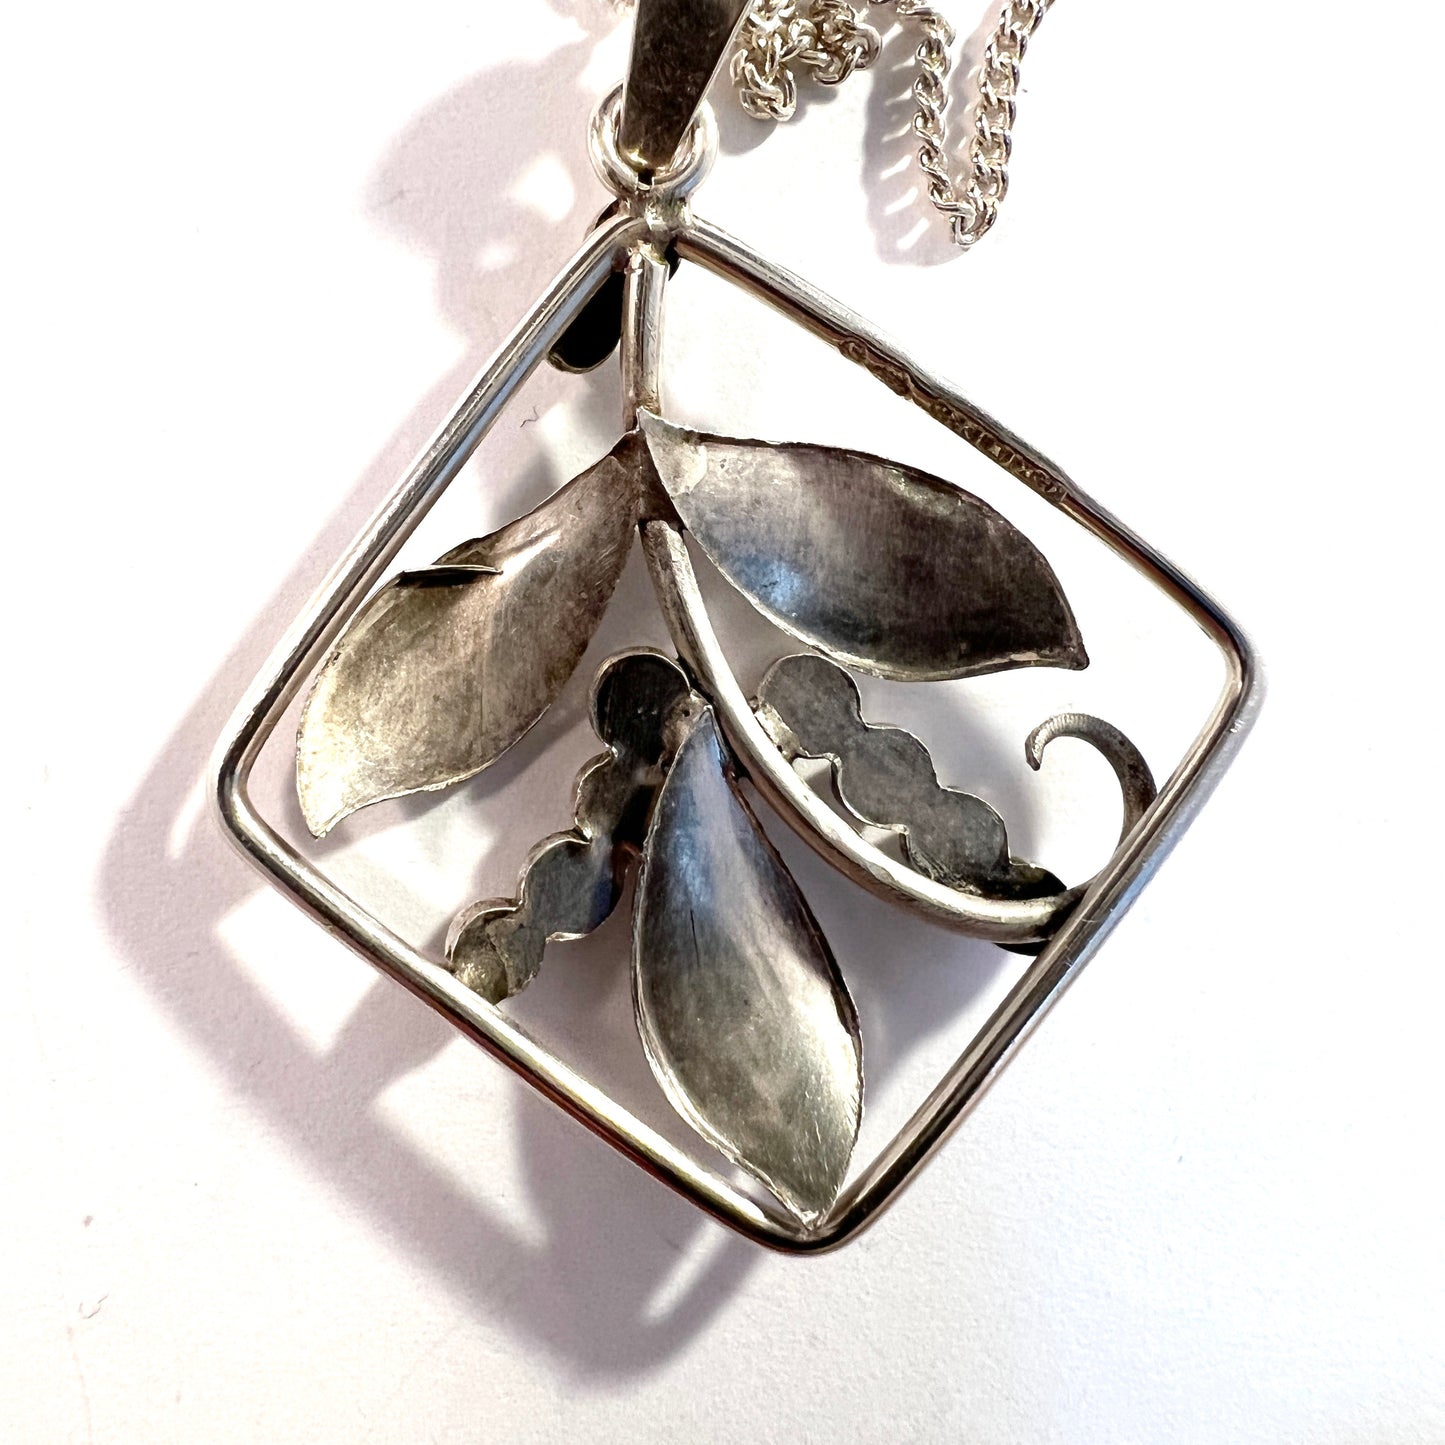 Kaplan, Sweden 1949. Vintage Solid Silver Pendant Necklace.